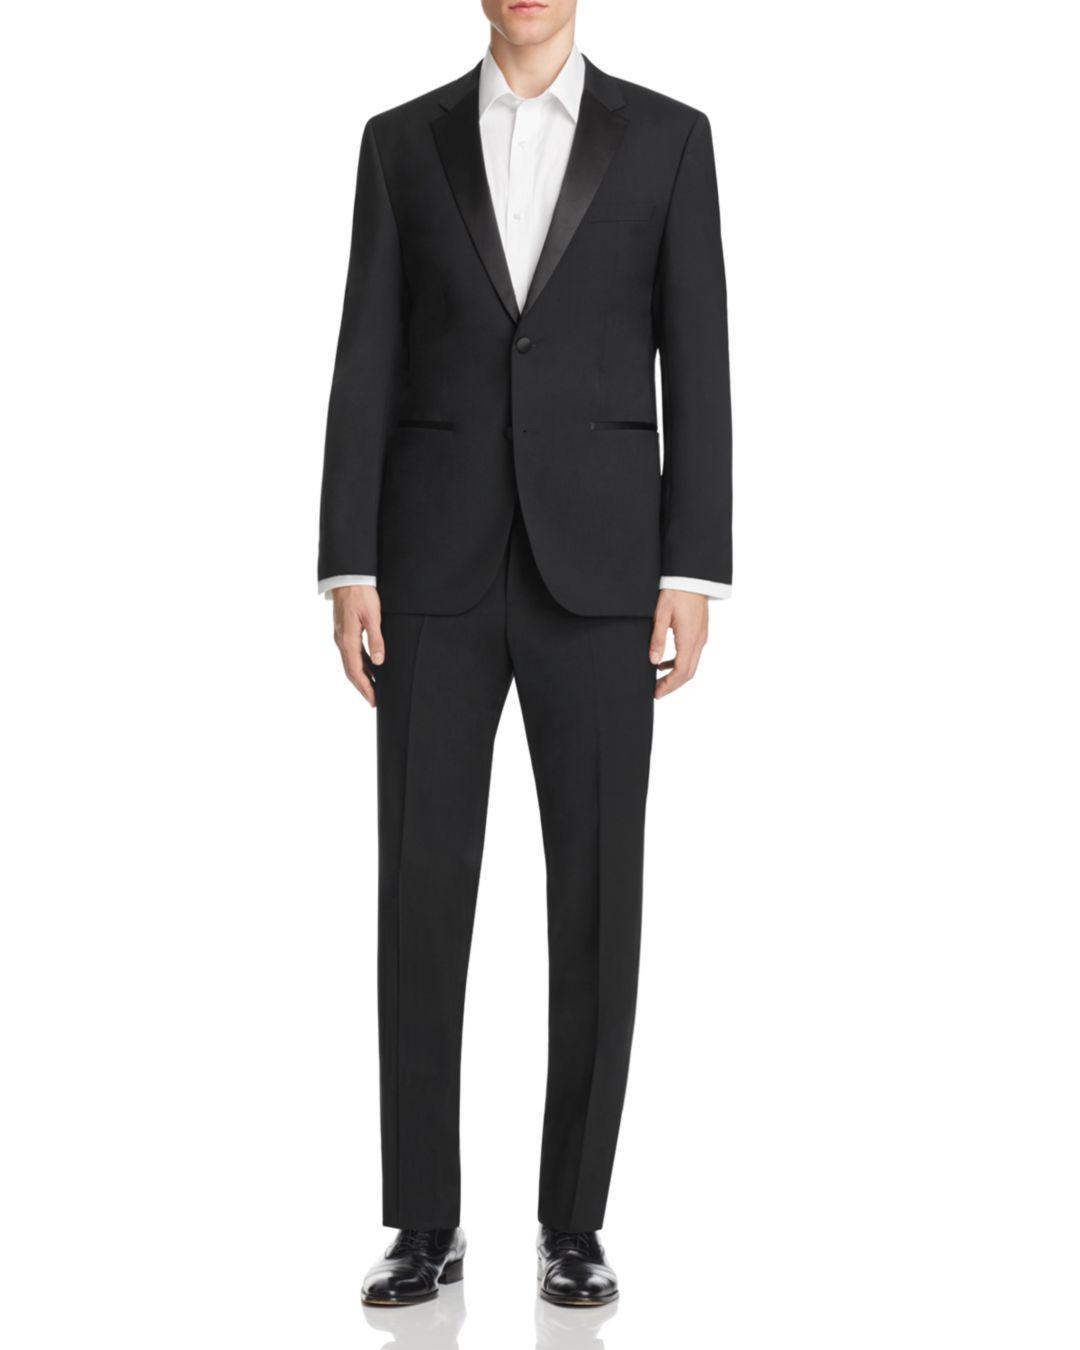 BOSS by HUGO BOSS Satin Stars Glamour Tuxedo Suit - Regular Fit in Black  for Men - Lyst